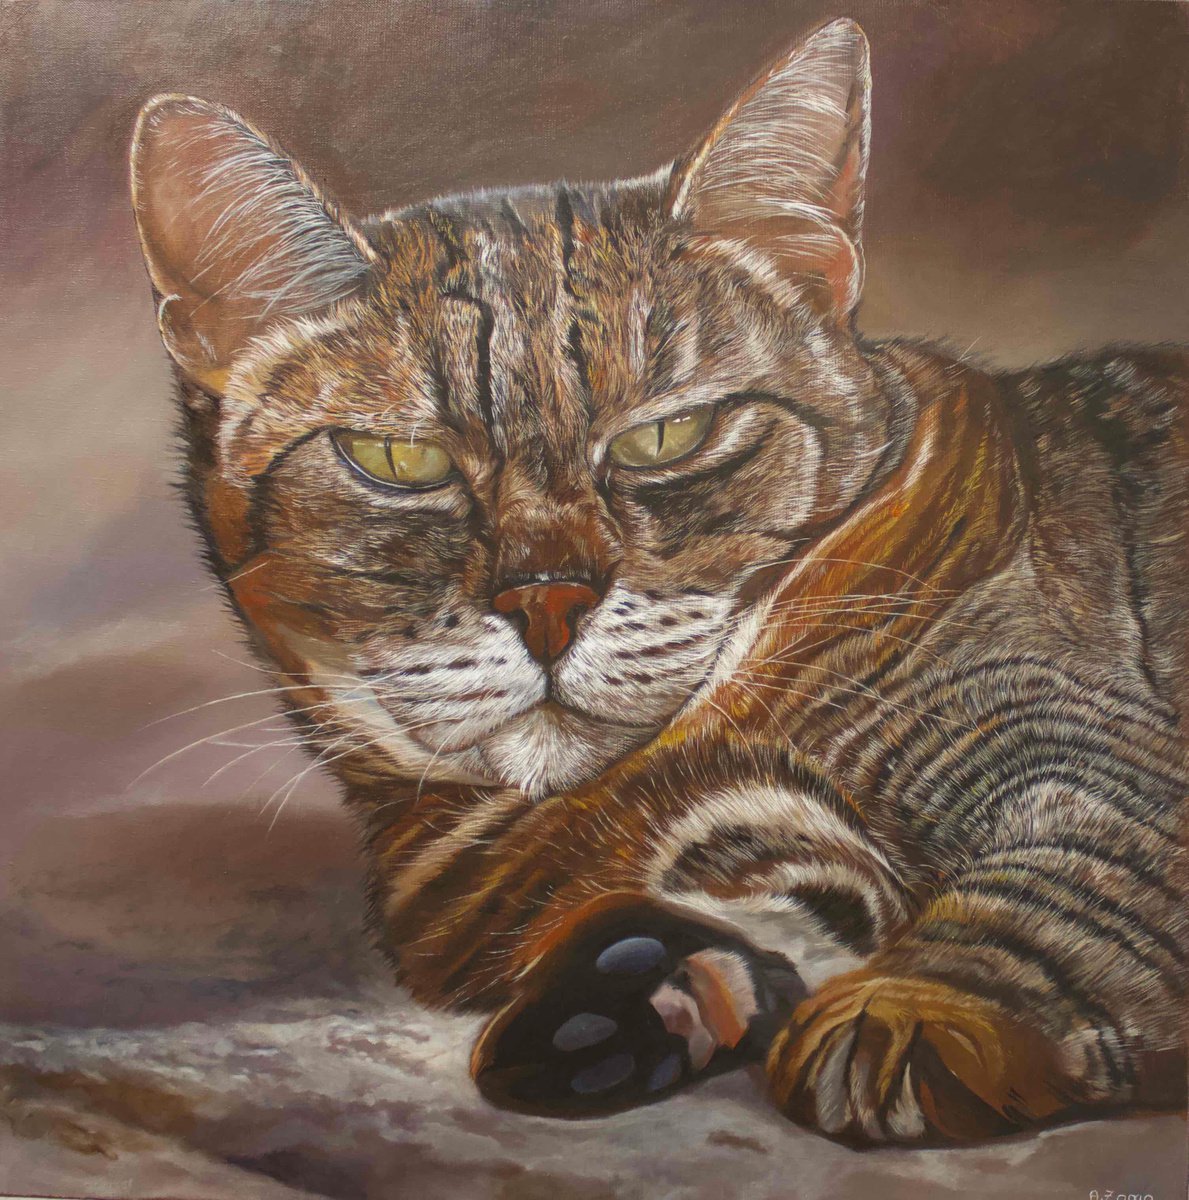 Zora The Great, Portrait of a Grey Cat by Anne Zamo